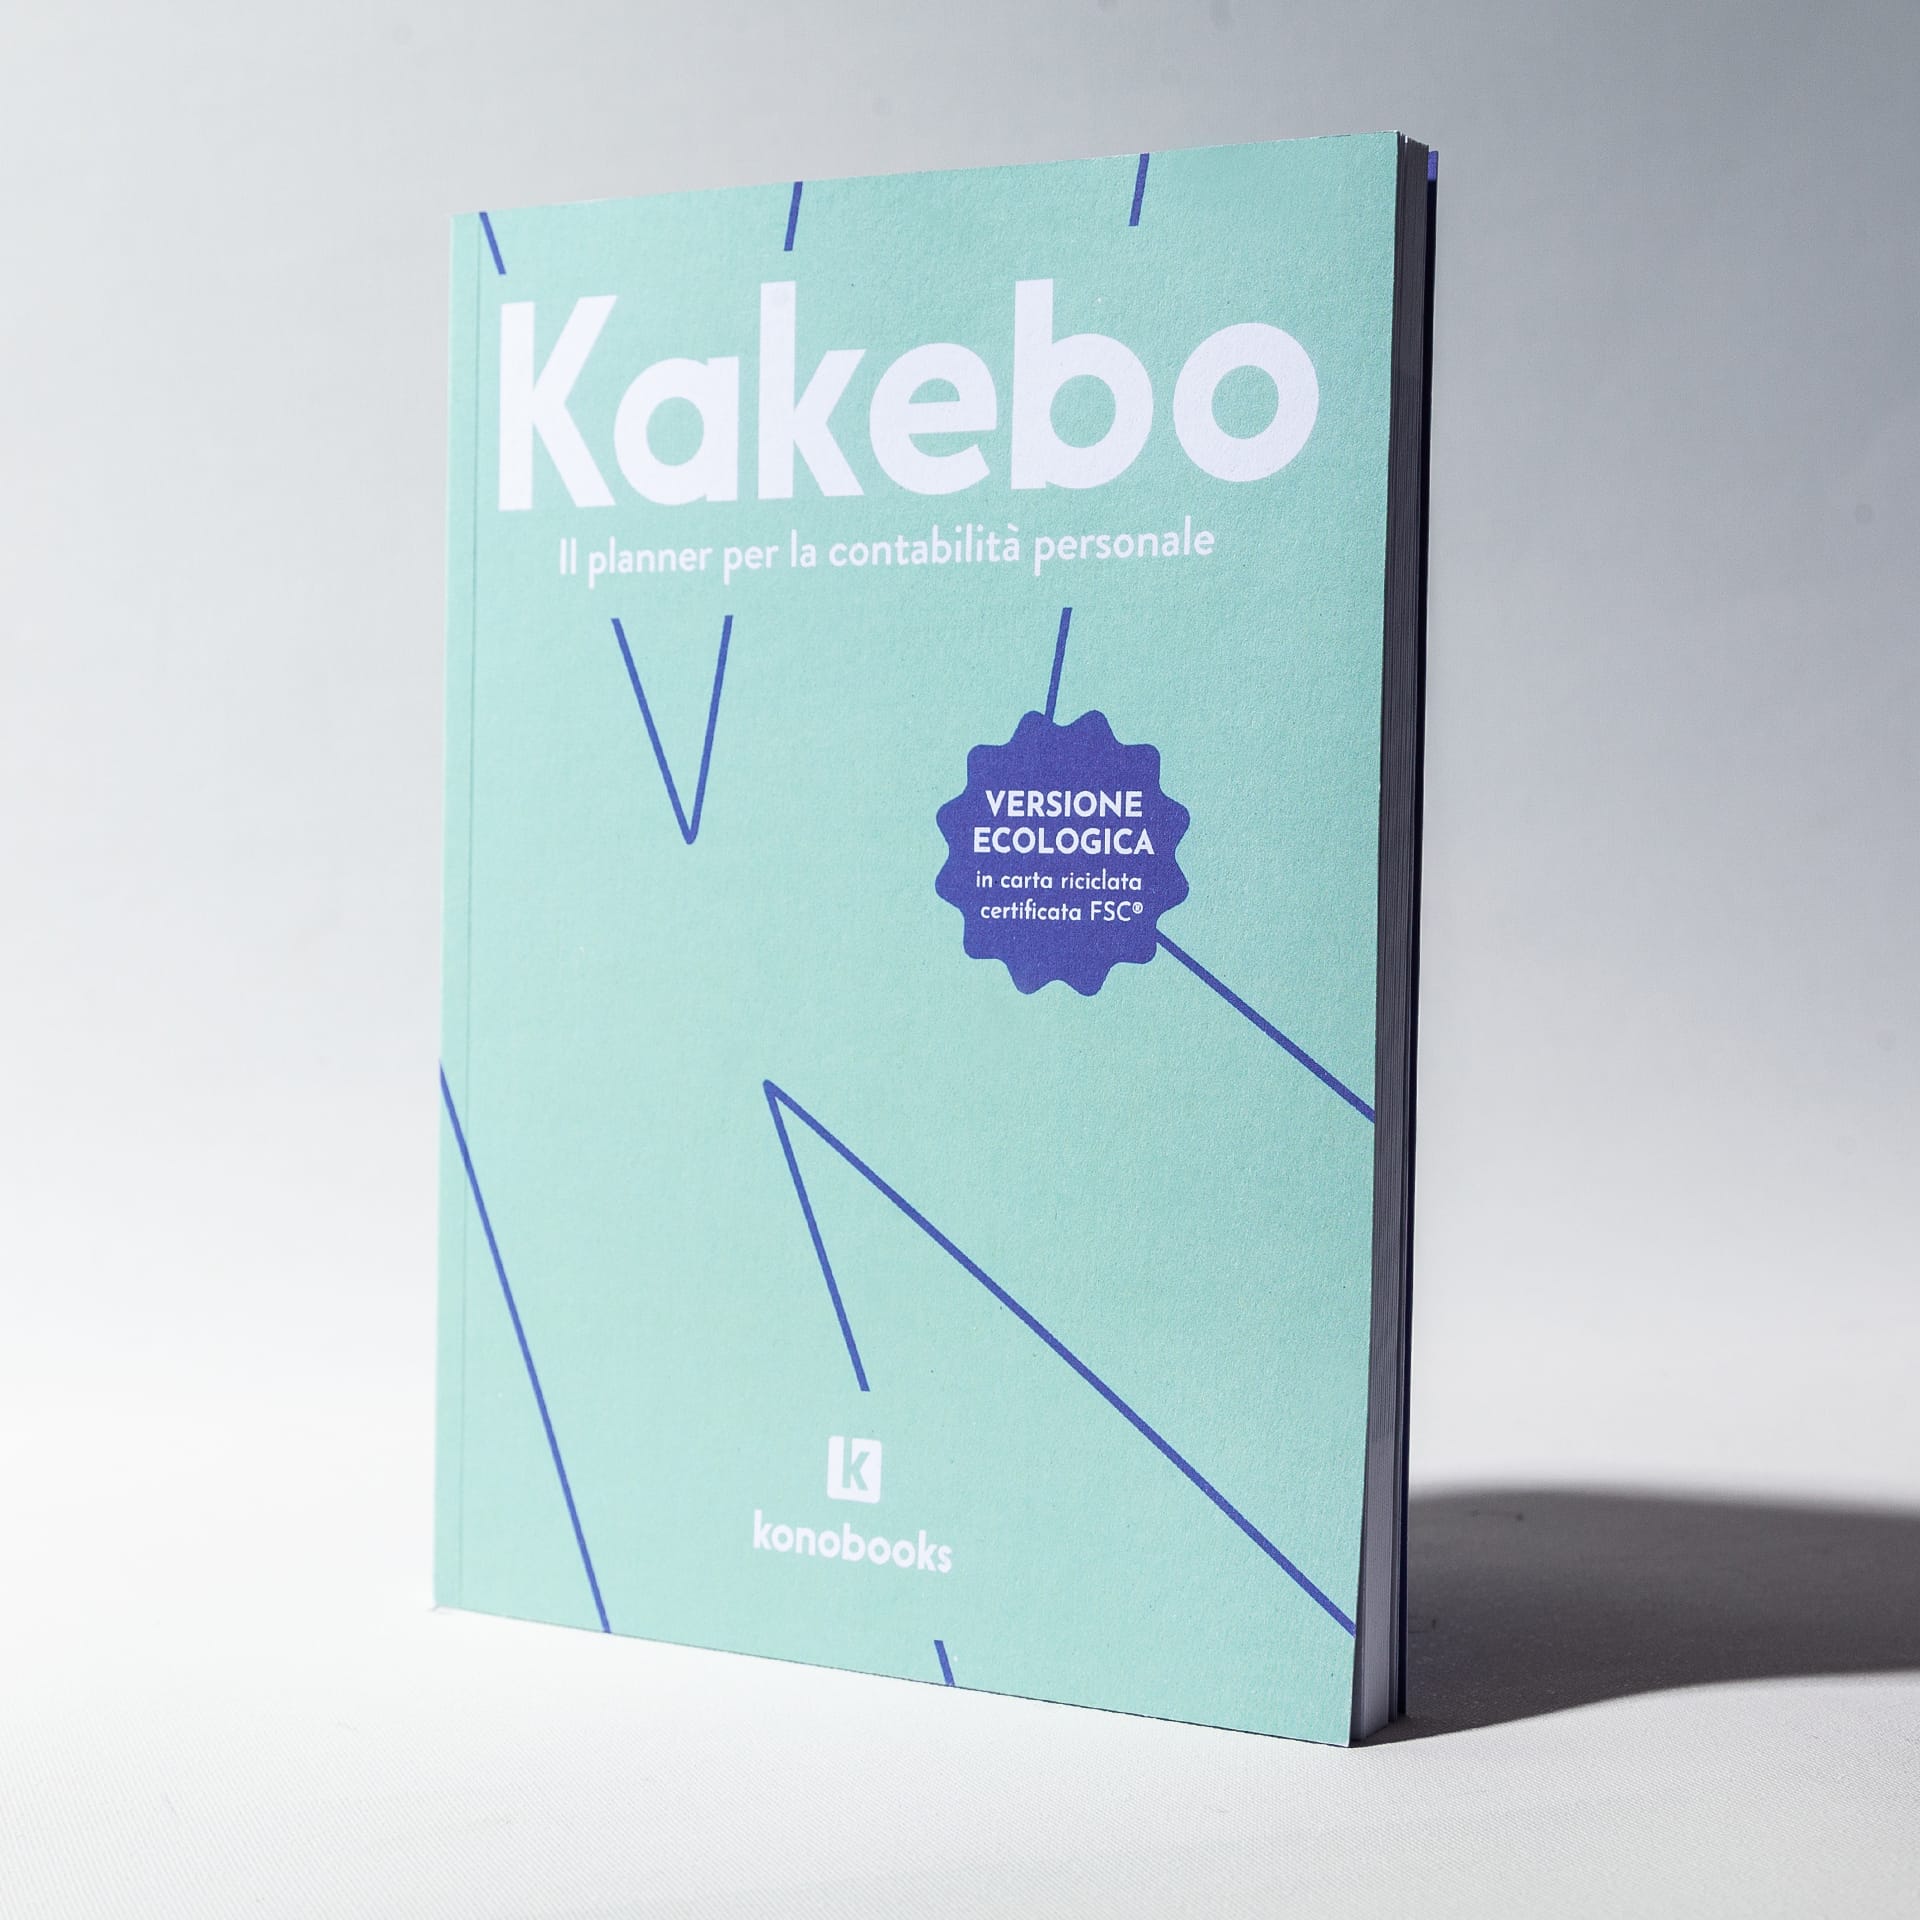 Kakebo: il planner per la contabilità personale [Ecologico